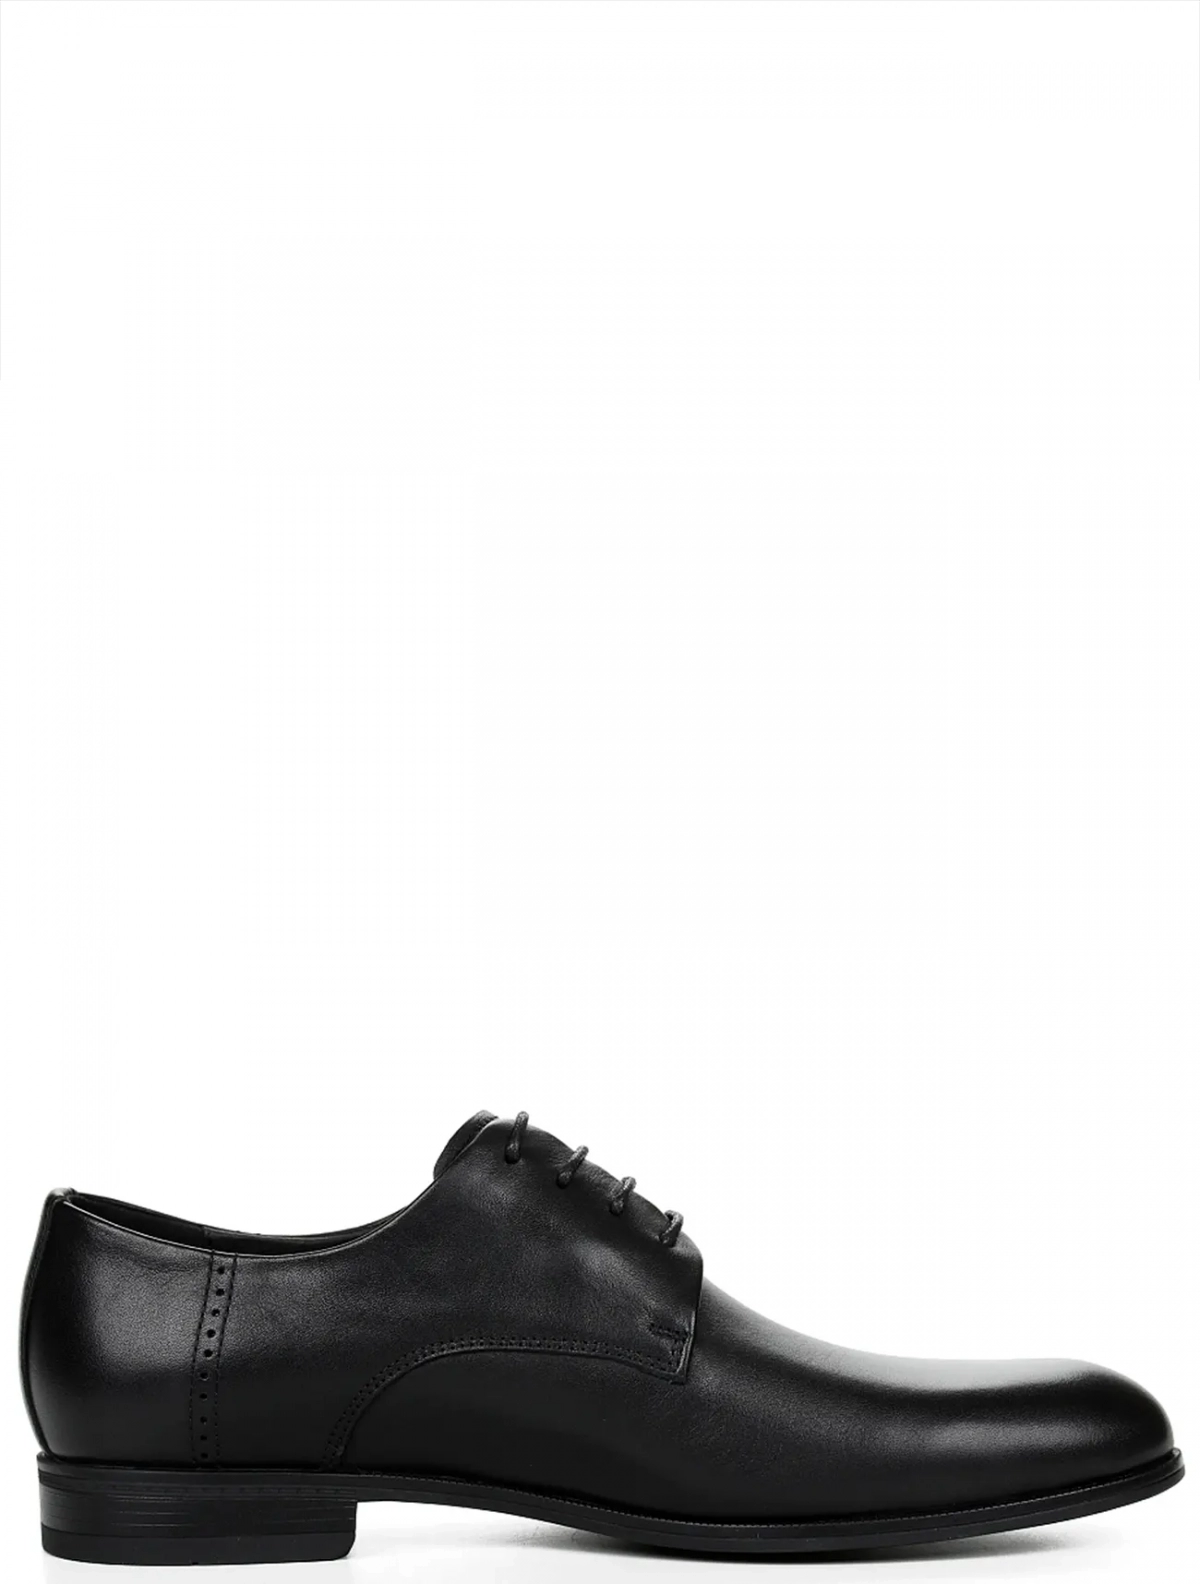 Respect VS83-161202 мужские туфли